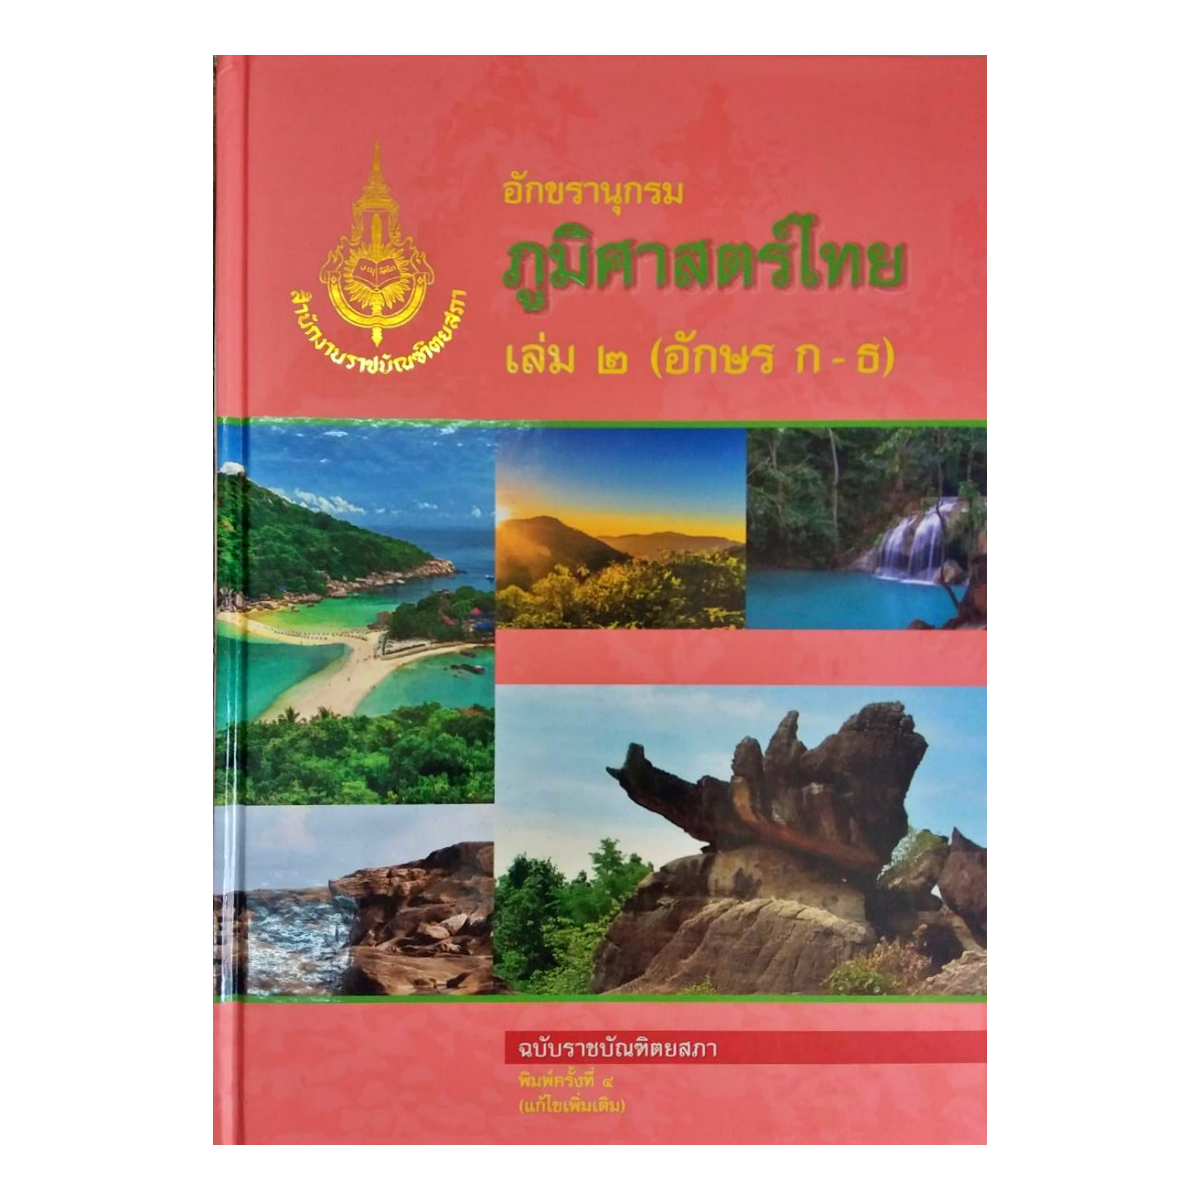 ราชบัณฑิต : อักขรานุกรมภูมิศาสตร์ไทย เล่ม ๒ (อักษร ก - ธ)